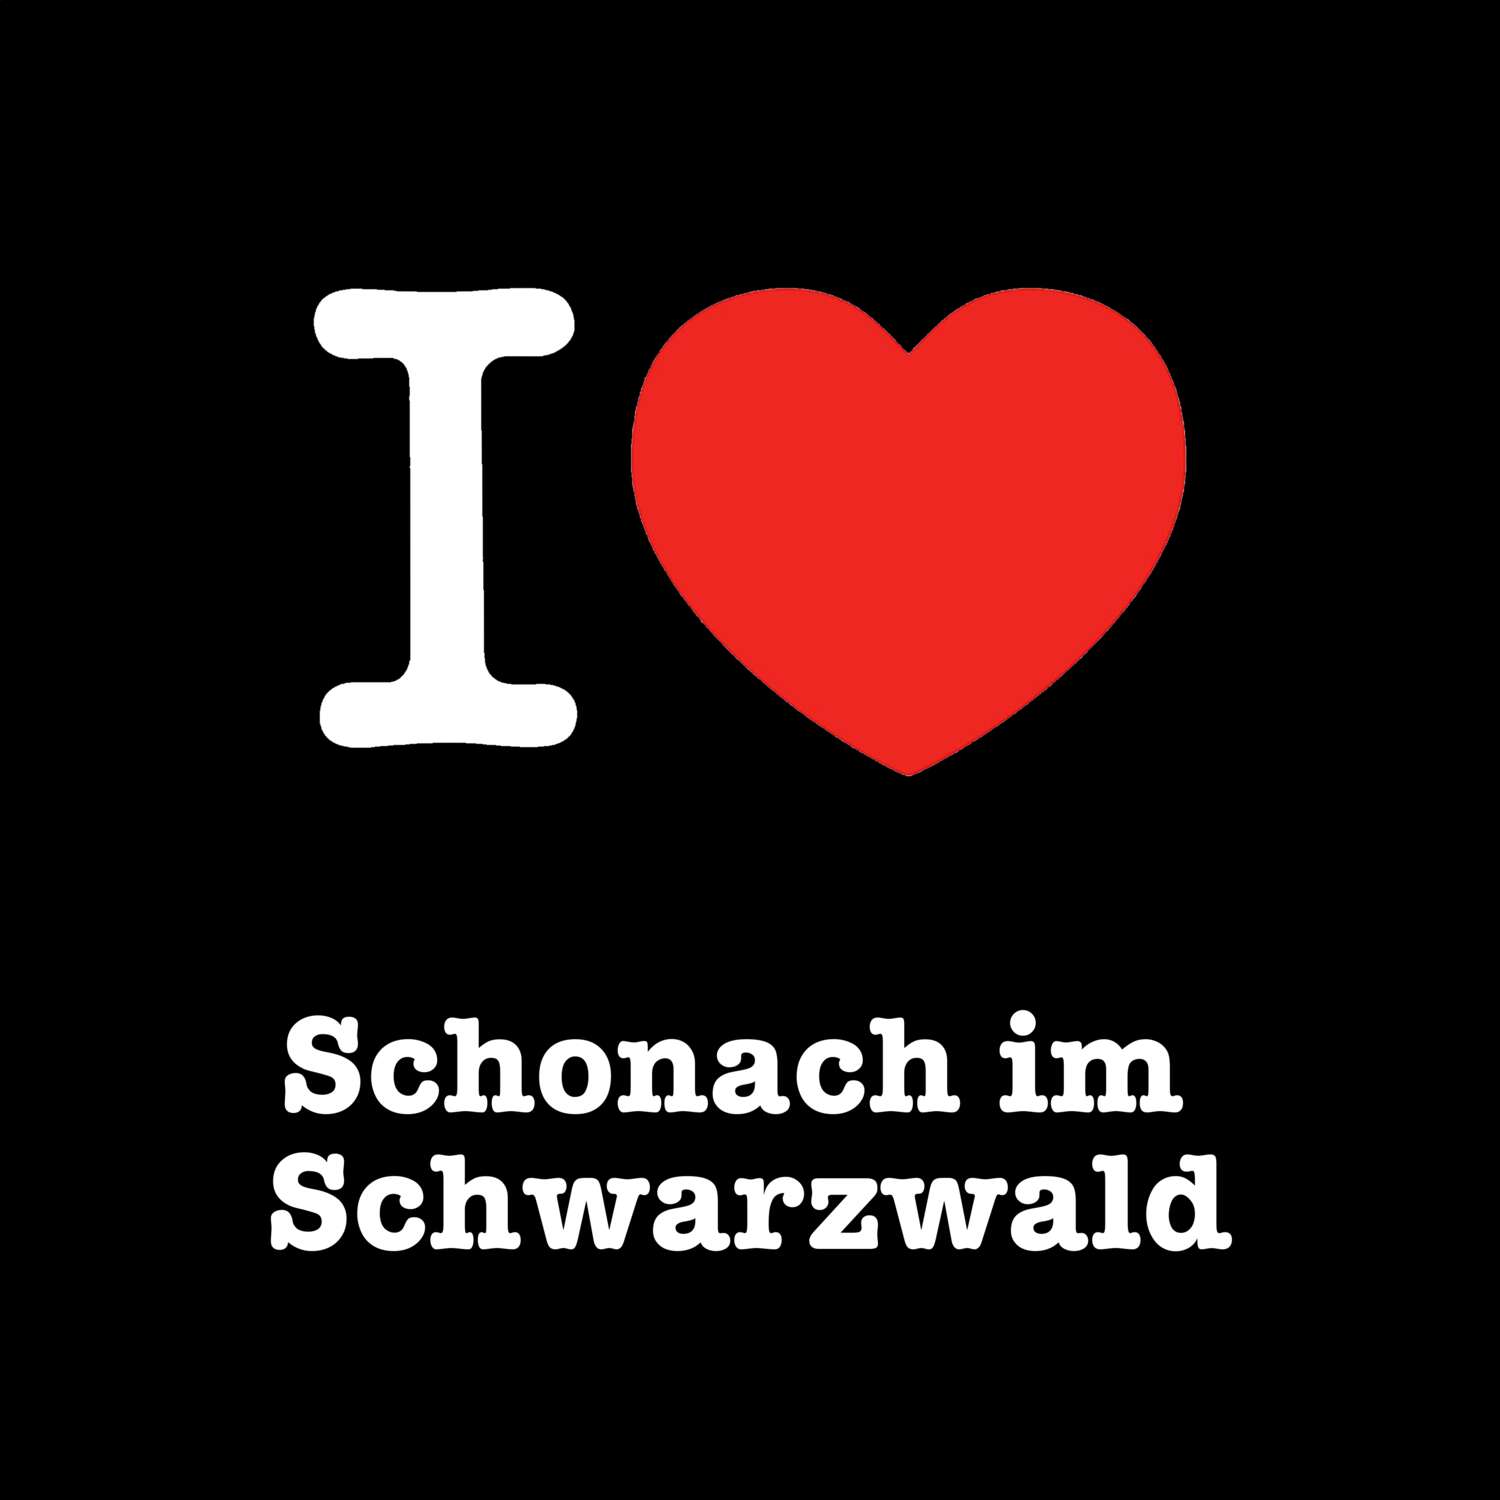 Schonach im Schwarzwald T-Shirt »I love«